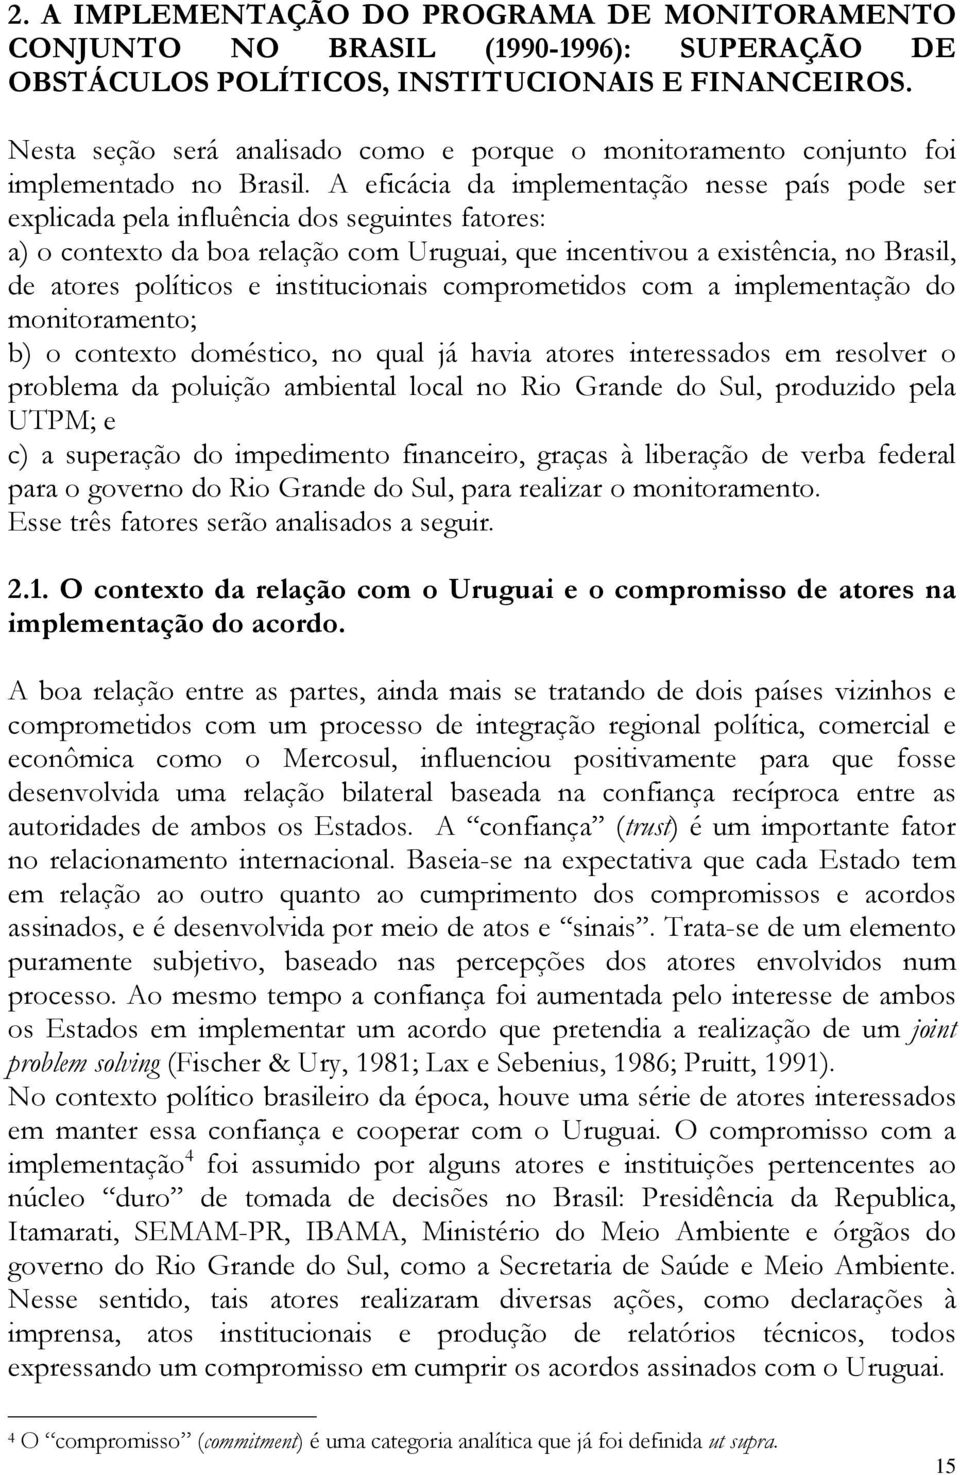 A eficácia da implementação nesse país pode ser explicada pela influência dos seguintes fatores: a) o contexto da boa relação com Uruguai, que incentivou a existência, no Brasil, de atores políticos